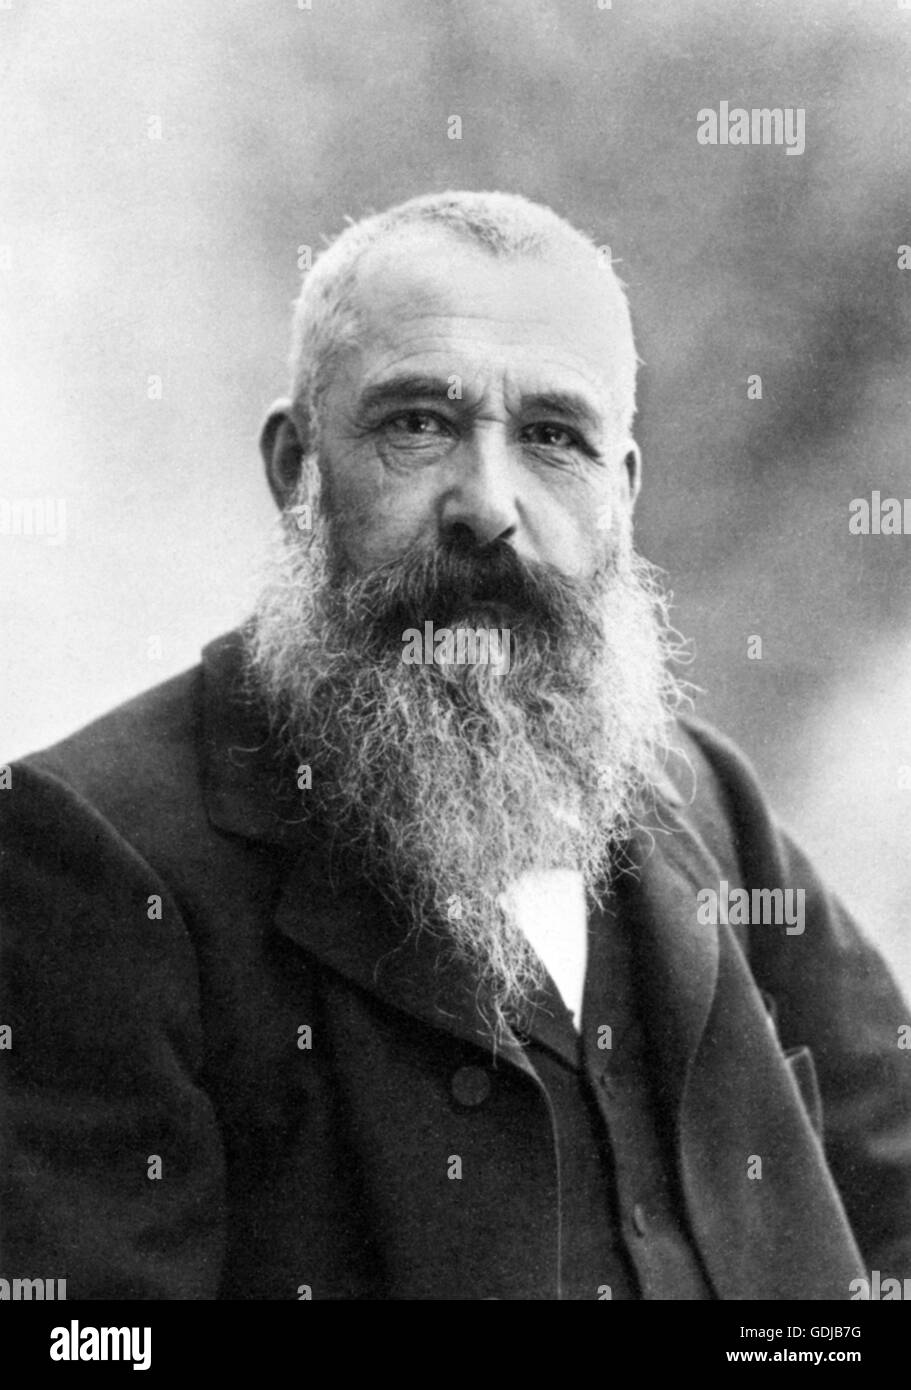 Claude Monet. Porträt des französischen impressionistischen Malers Claude Monet (1840-1926) von Nadar (Gaspard-Félix Tournachon), 1899. Stockfoto